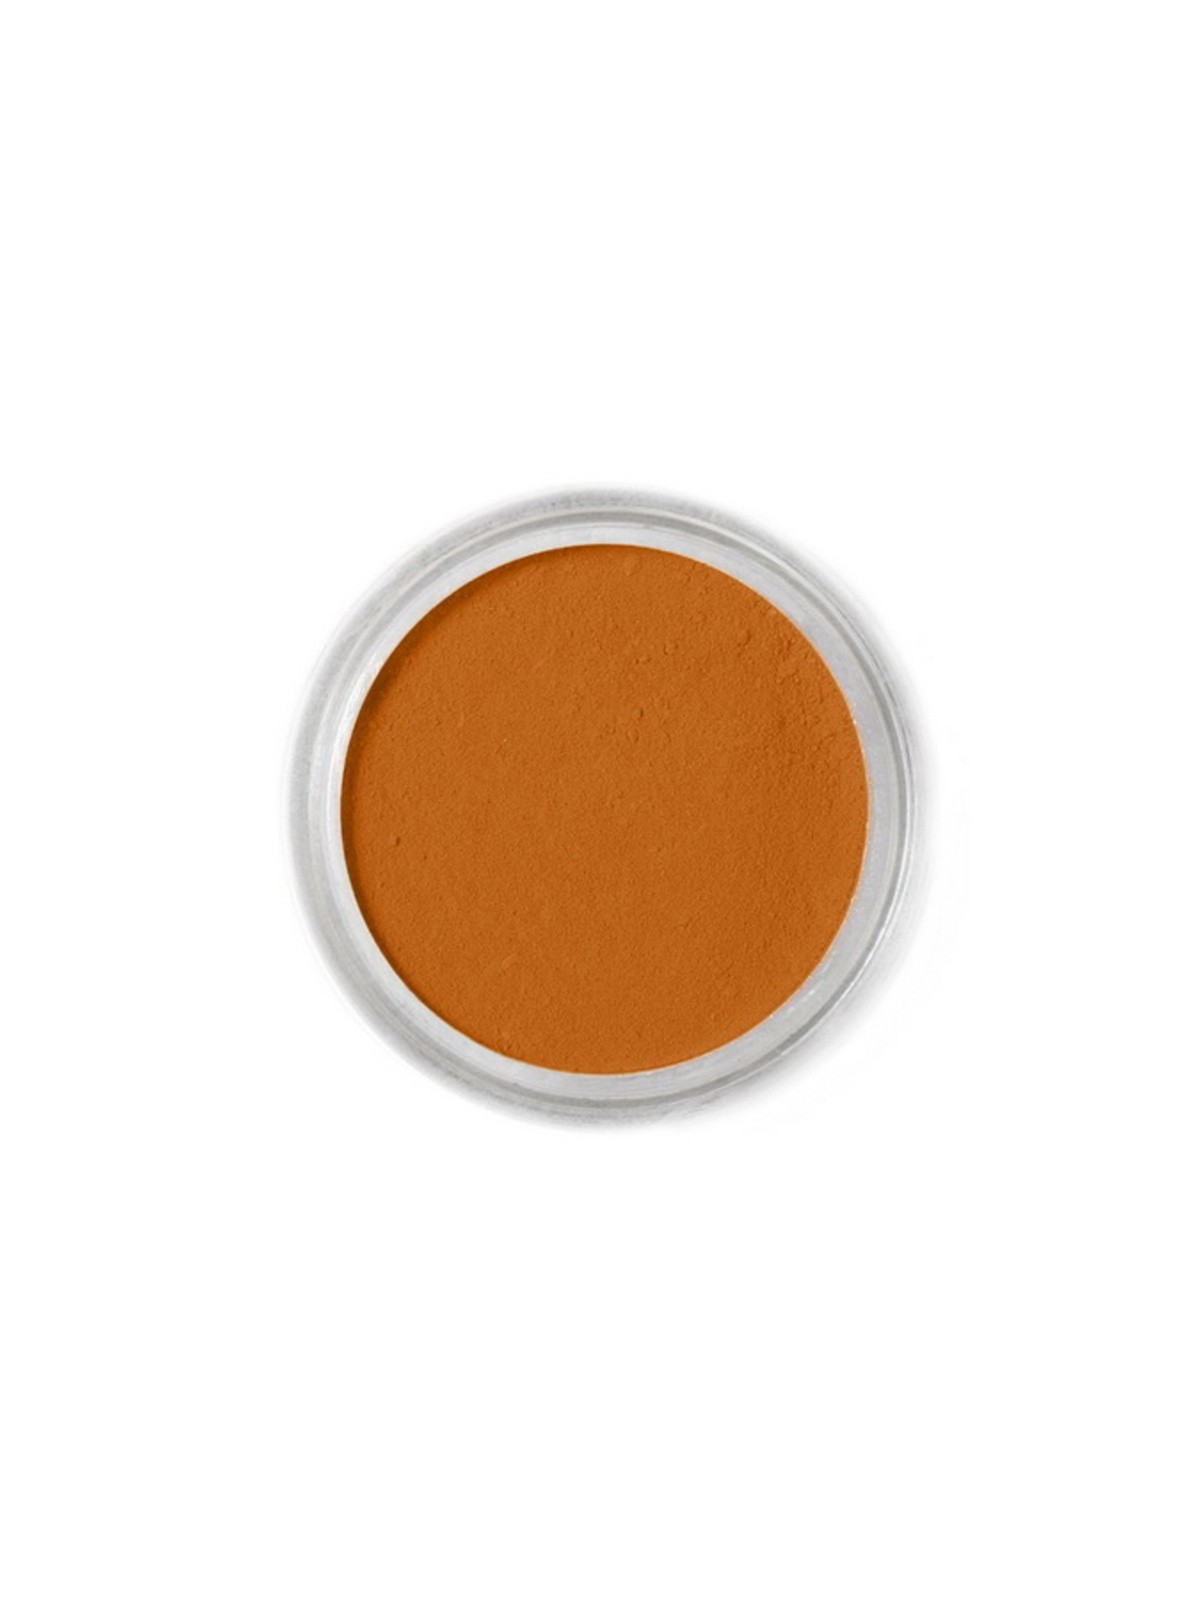 Jedlá prachová farba Fractal - hnědá - Squirrel Brown, Mókusbarna (1,7 g)